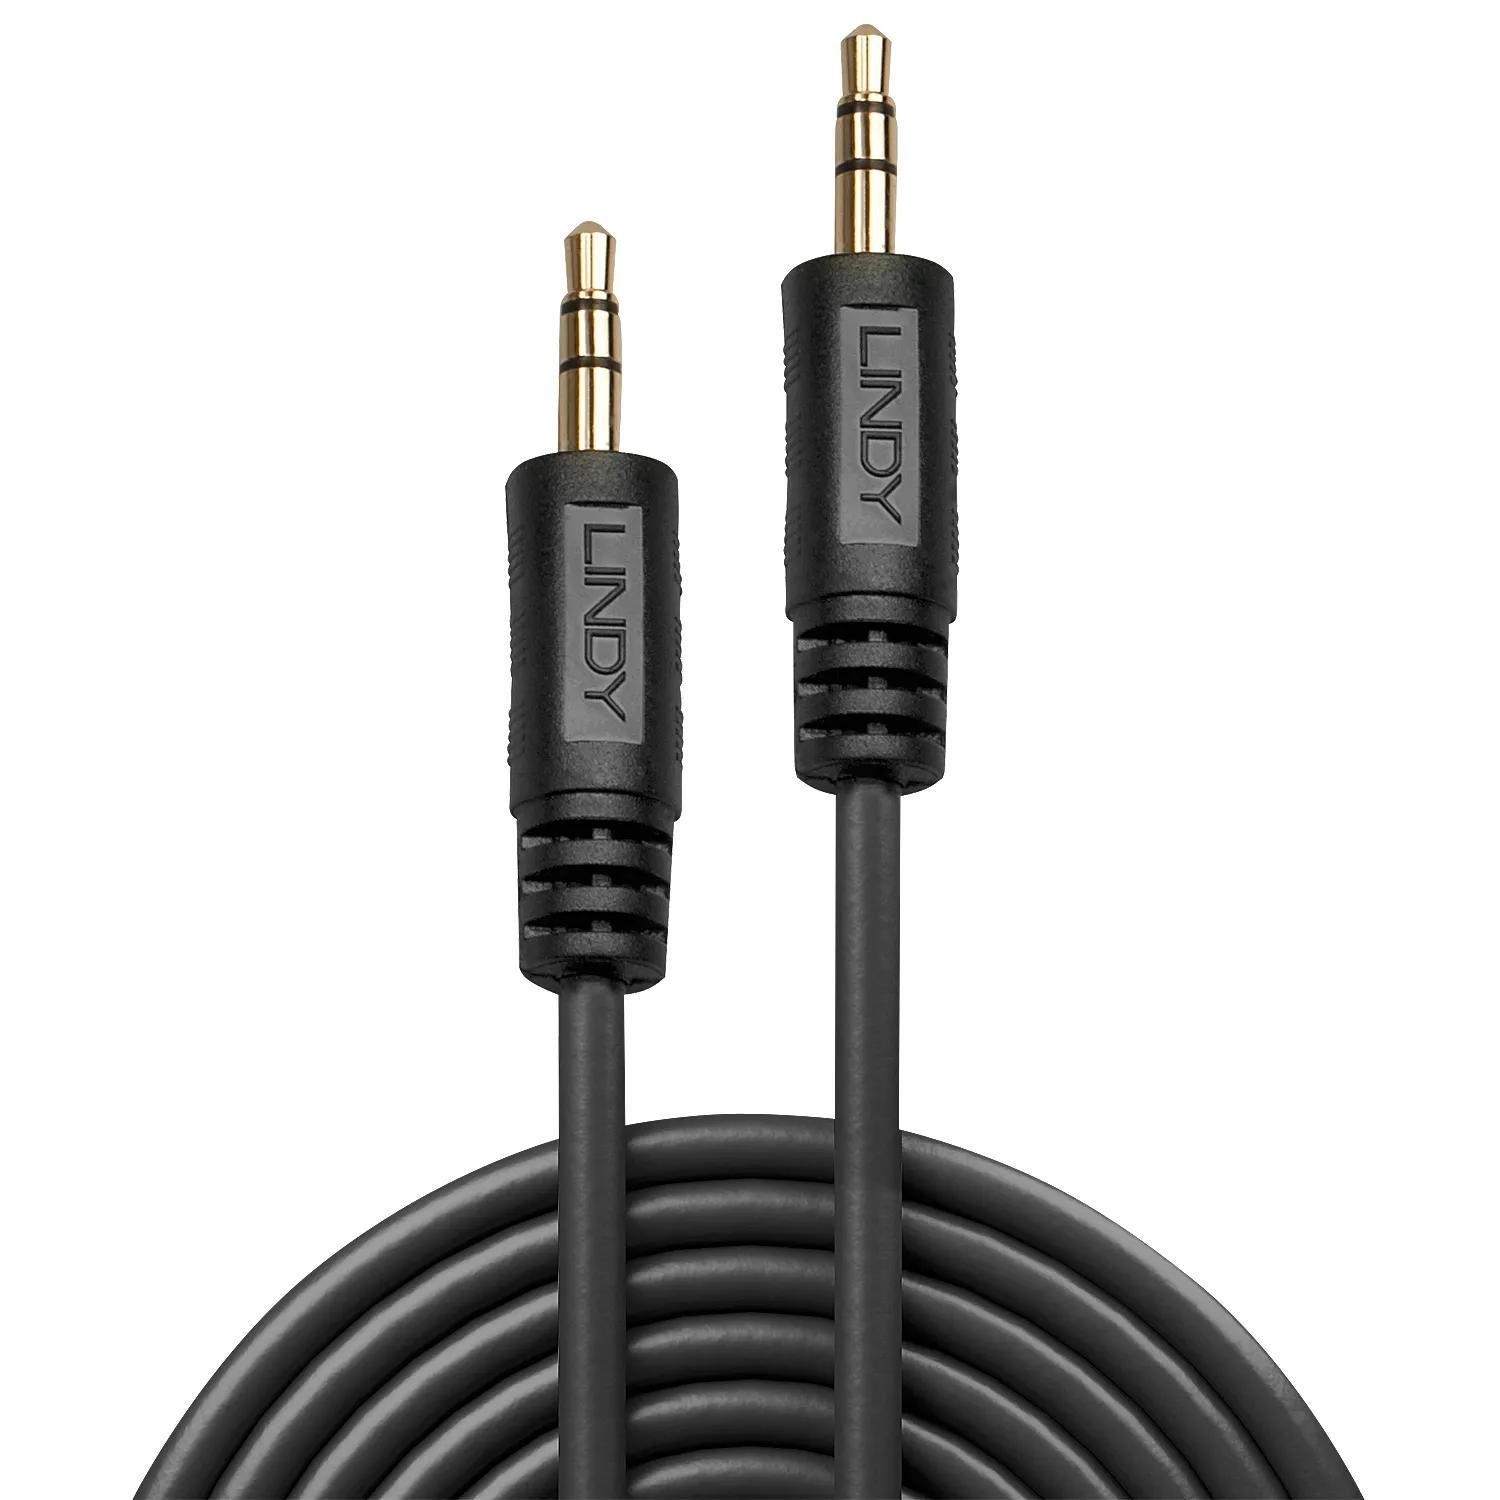 Vente LINDY Premium Audio Cable 3m with 3.5mm Stereo Lindy au meilleur prix - visuel 4